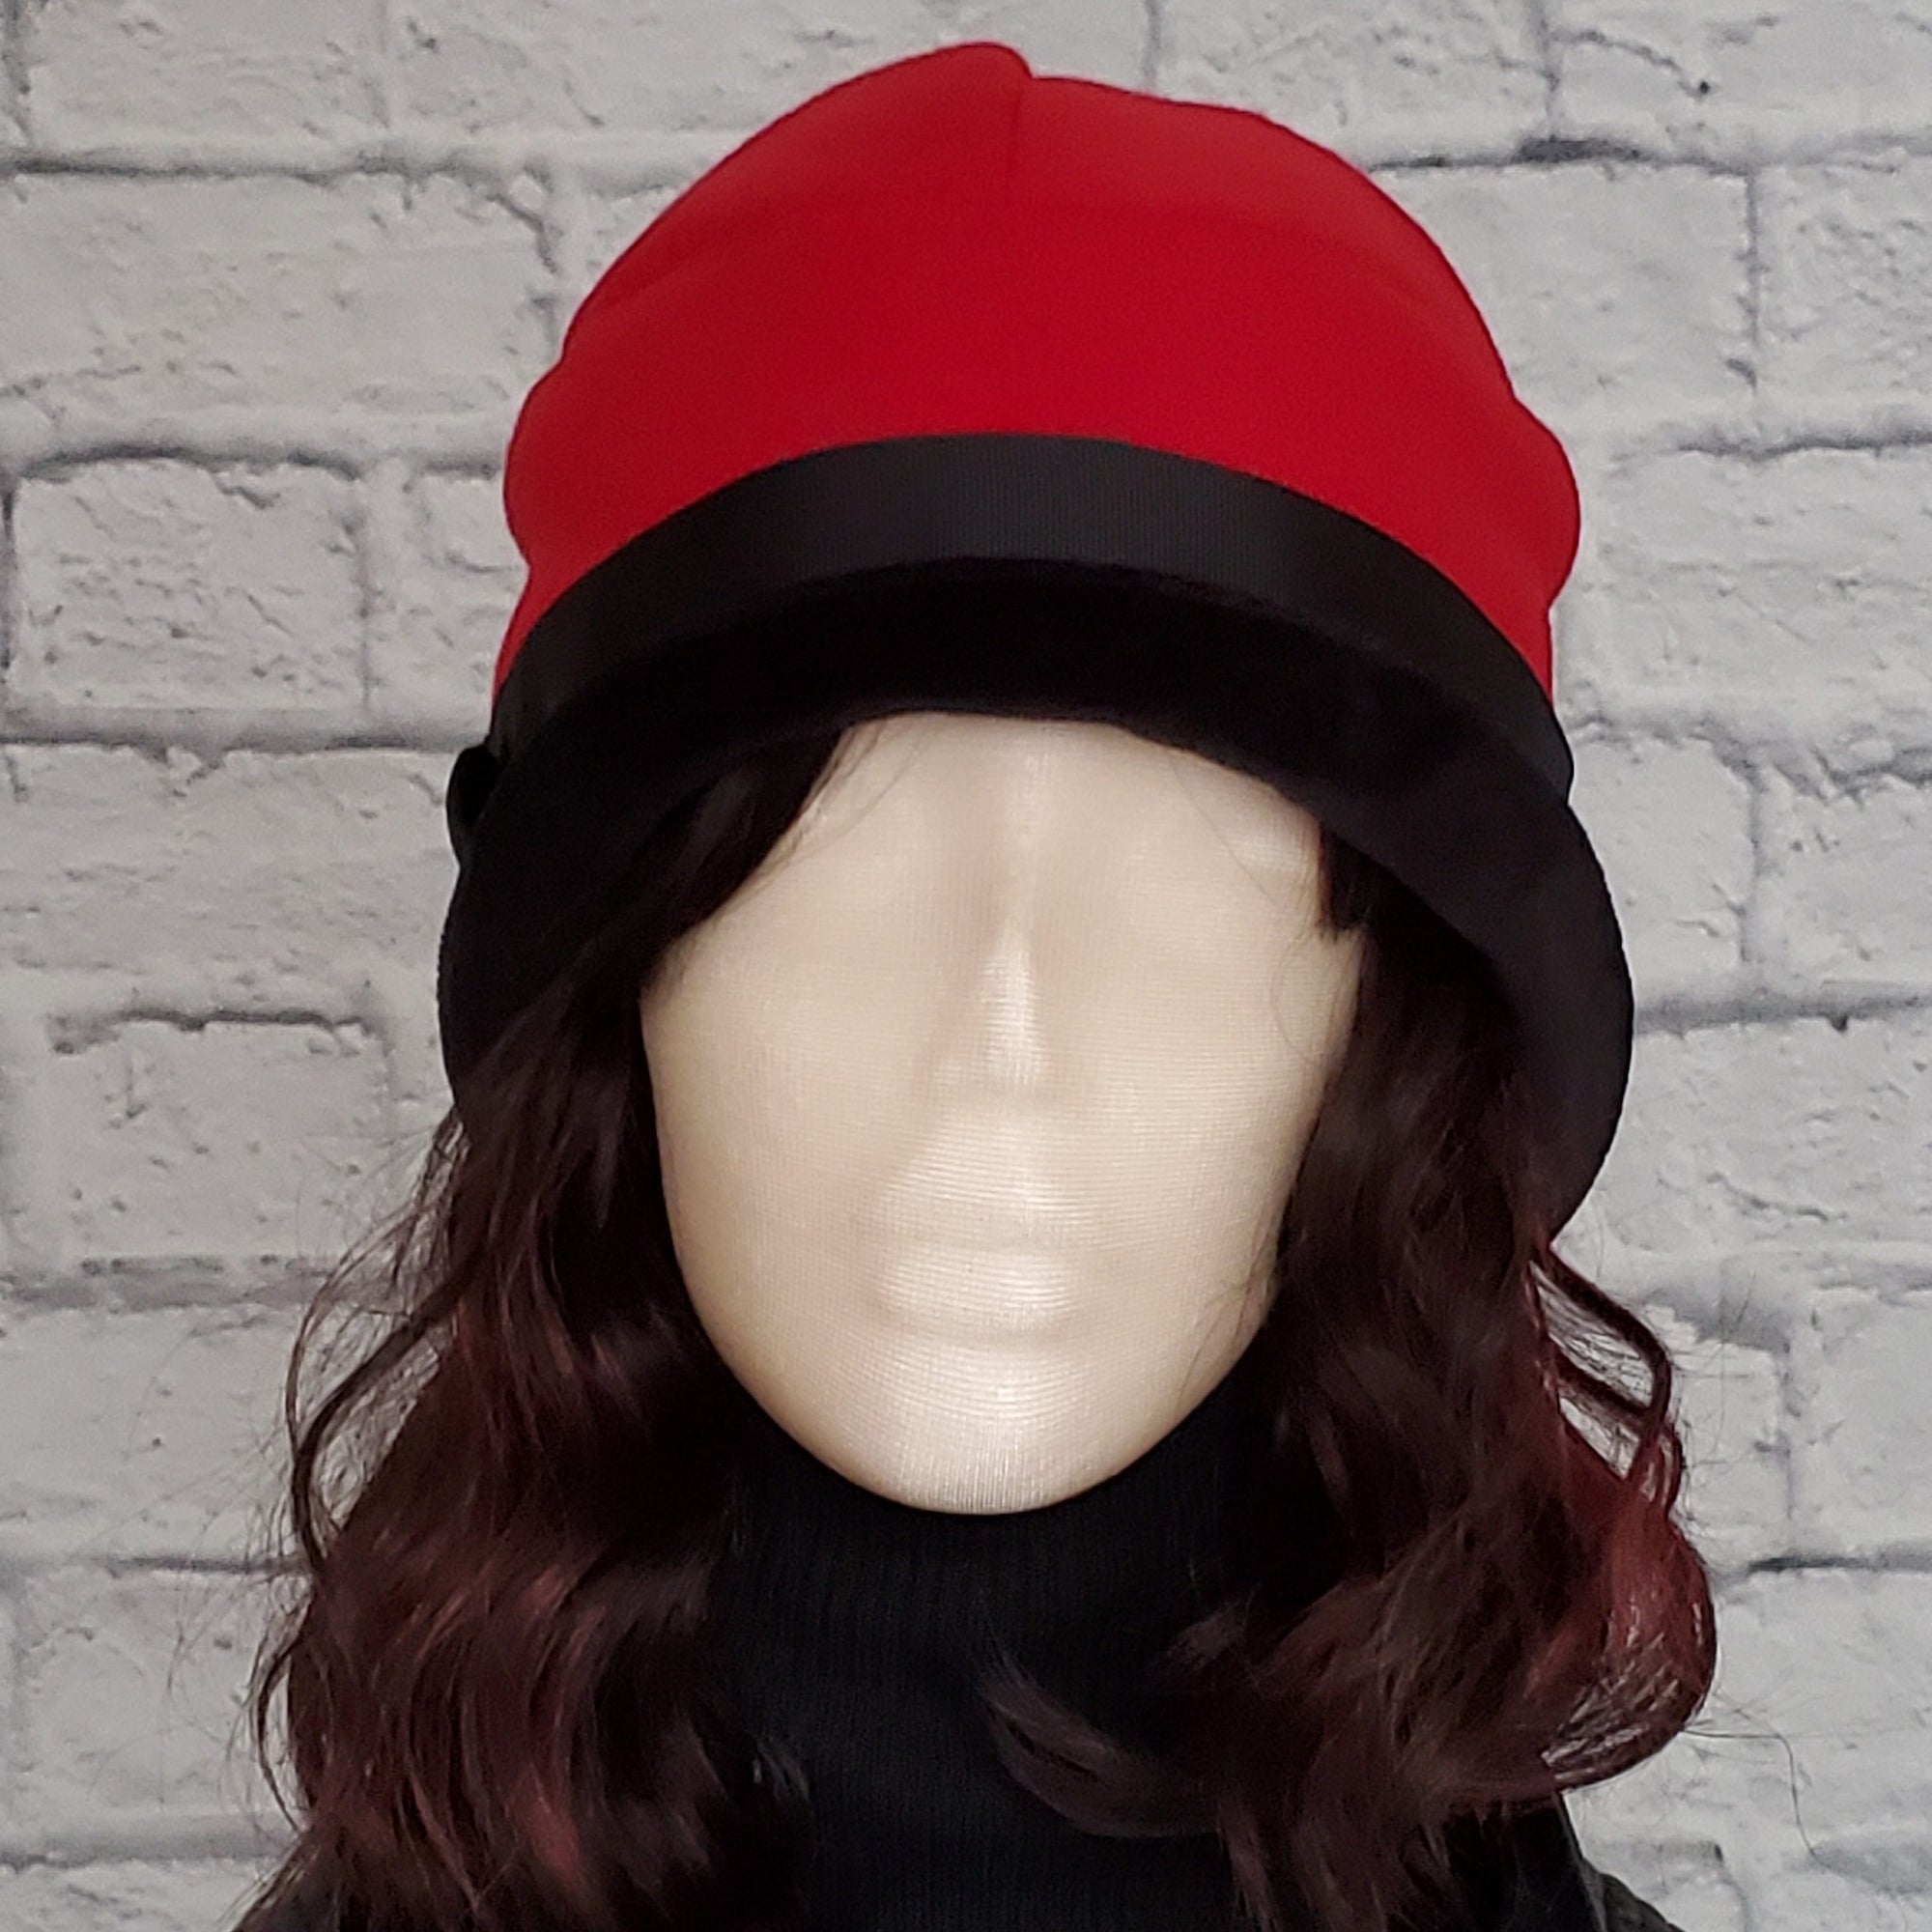 Women's Elegant Cloche Hat in Red Felt with Black Velvet Brim and Black Satin Trim and Black Velvet Button Detail